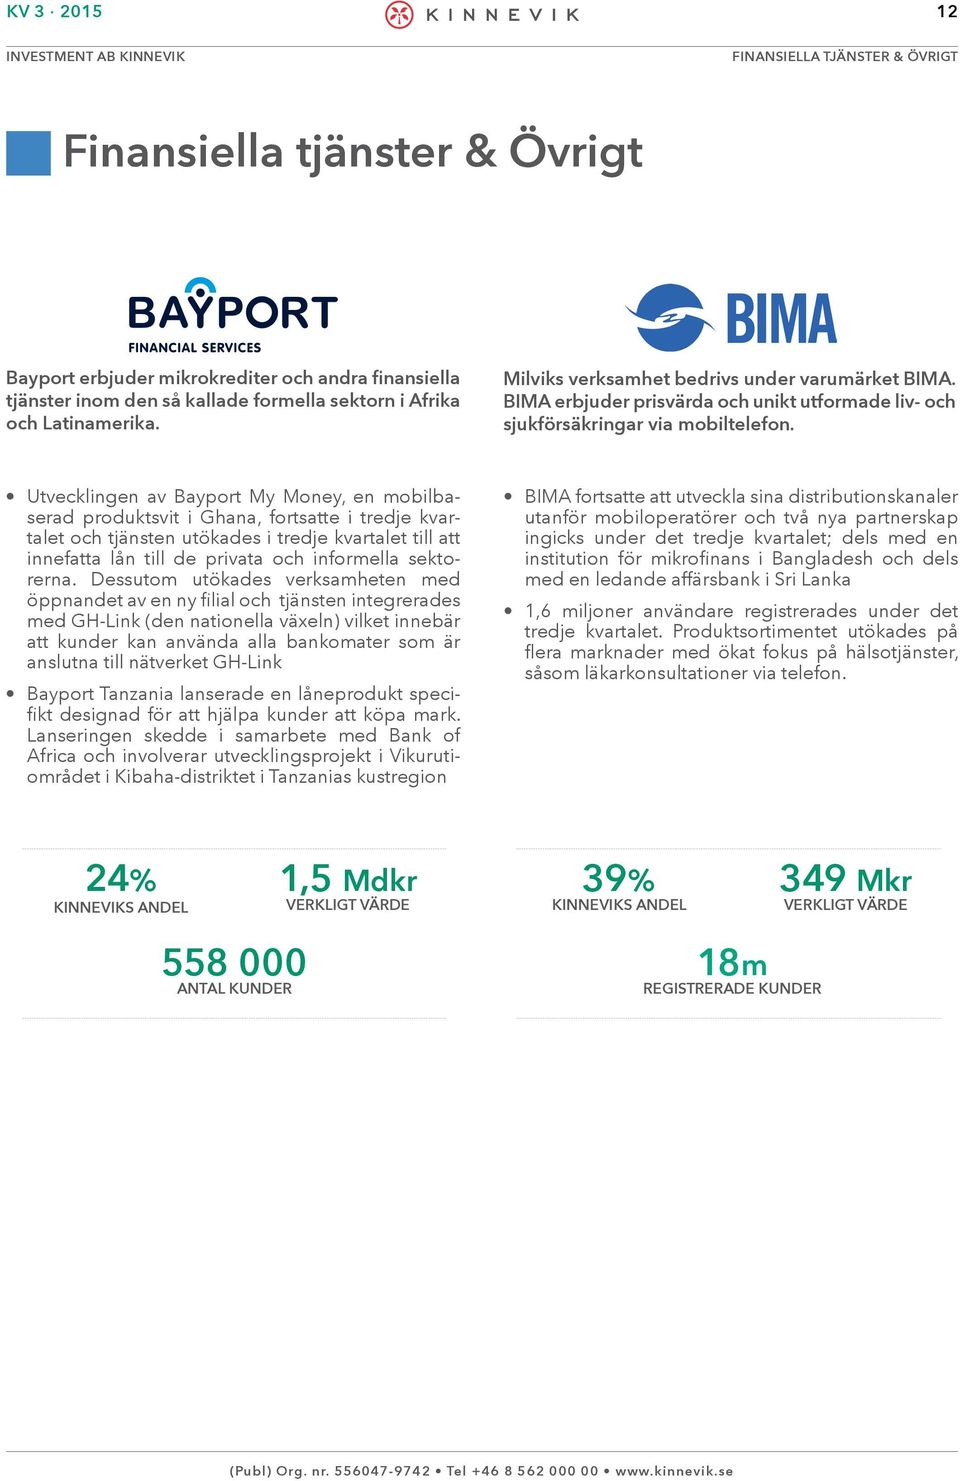 Utvecklingen av Bayport My Money, en mobilbaserad produktsvit i Ghana, fortsatte i tredje kvartalet och tjänsten utökades i tredje kvartalet till att innefatta lån till de privata och informella